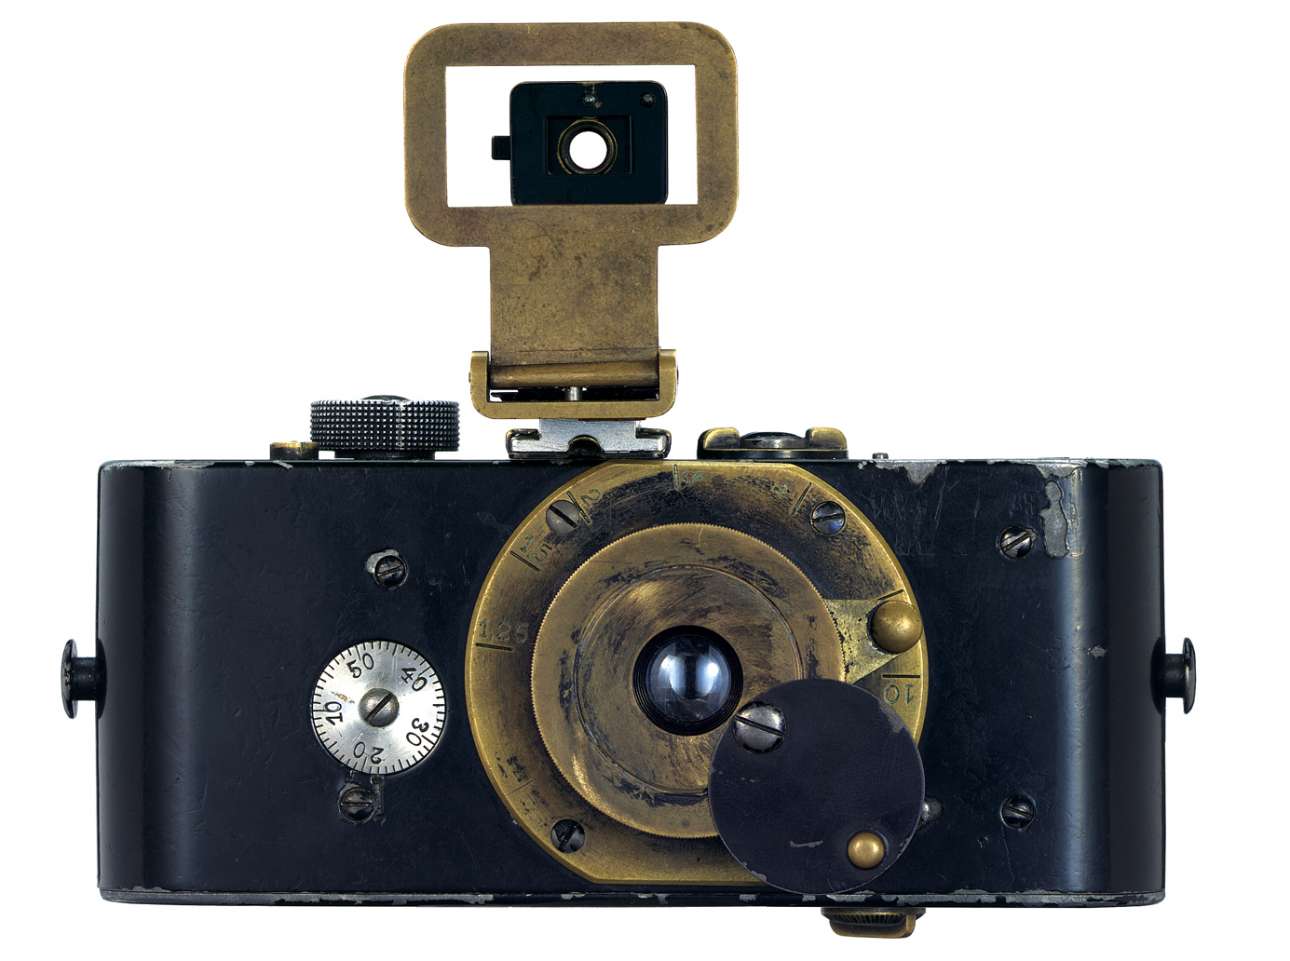 Η αρχική πρωτότυπη Leica του 1914, ένα επαναστατικό τεχνολογικό επίτευγμα για την εποχή του που μπορεί να συγκριθεί με τα κινητά τηλέφωνα